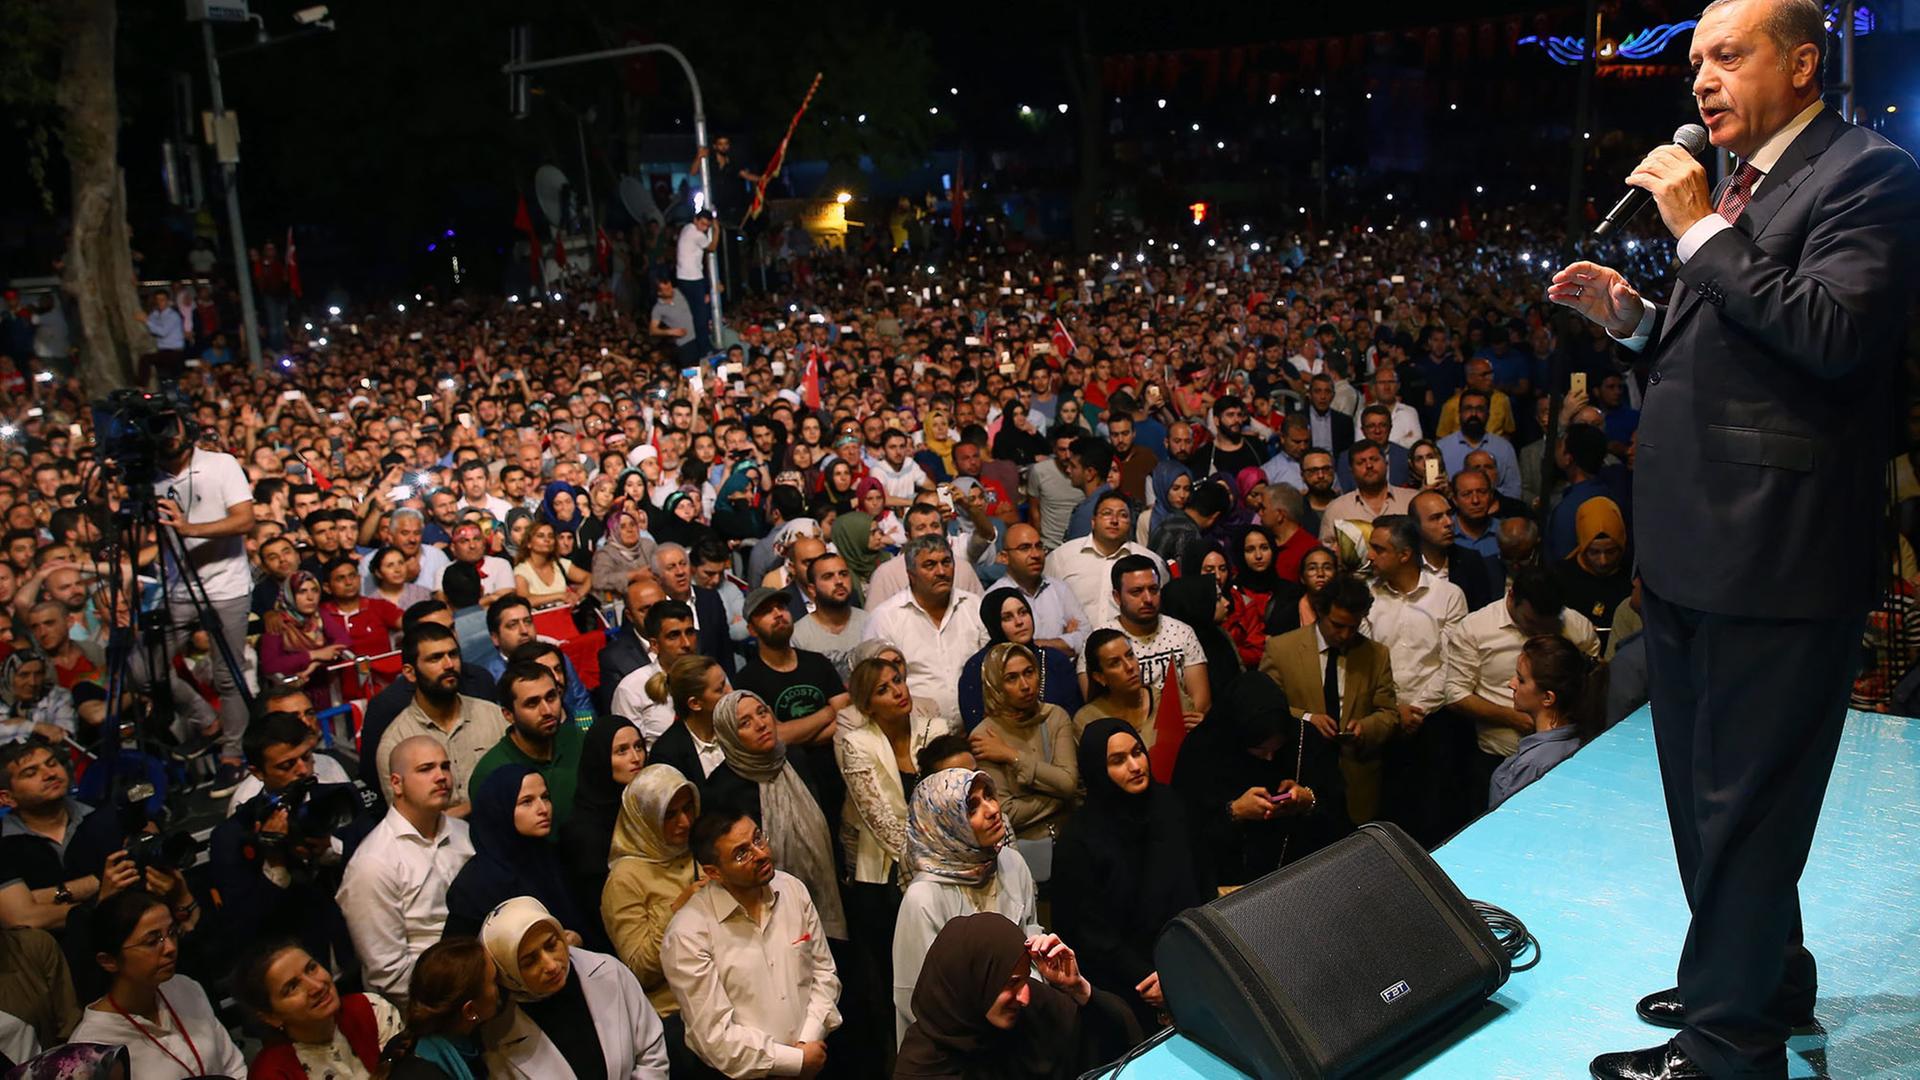 Der türkische Präsident Recep Tayyip Erdogan spricht in der Nacht des 18. Juli 2016 in Istanbul.